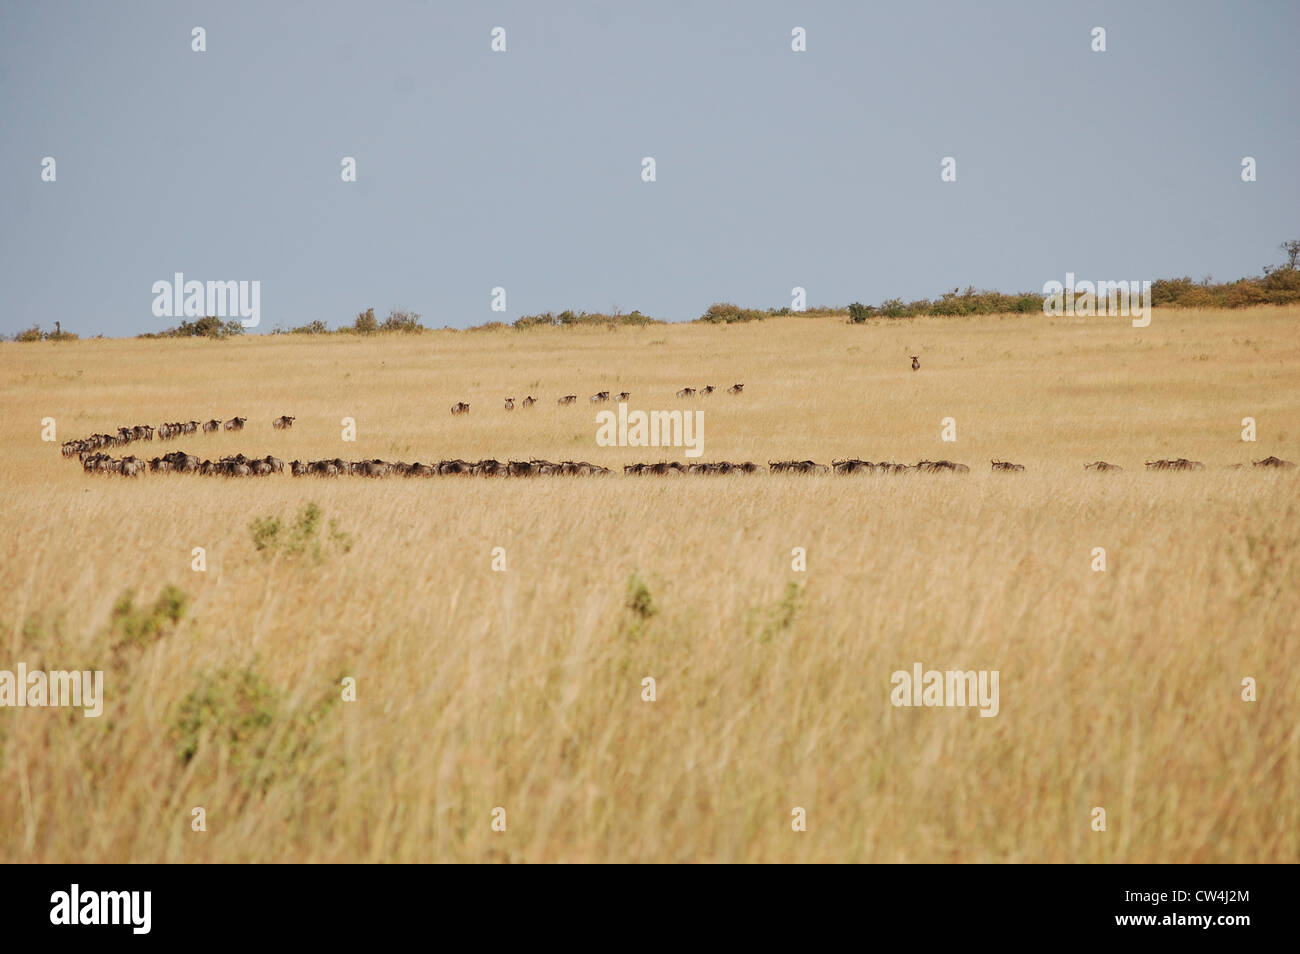 The great migration, Maasai Mara, Kenya Stock Photo